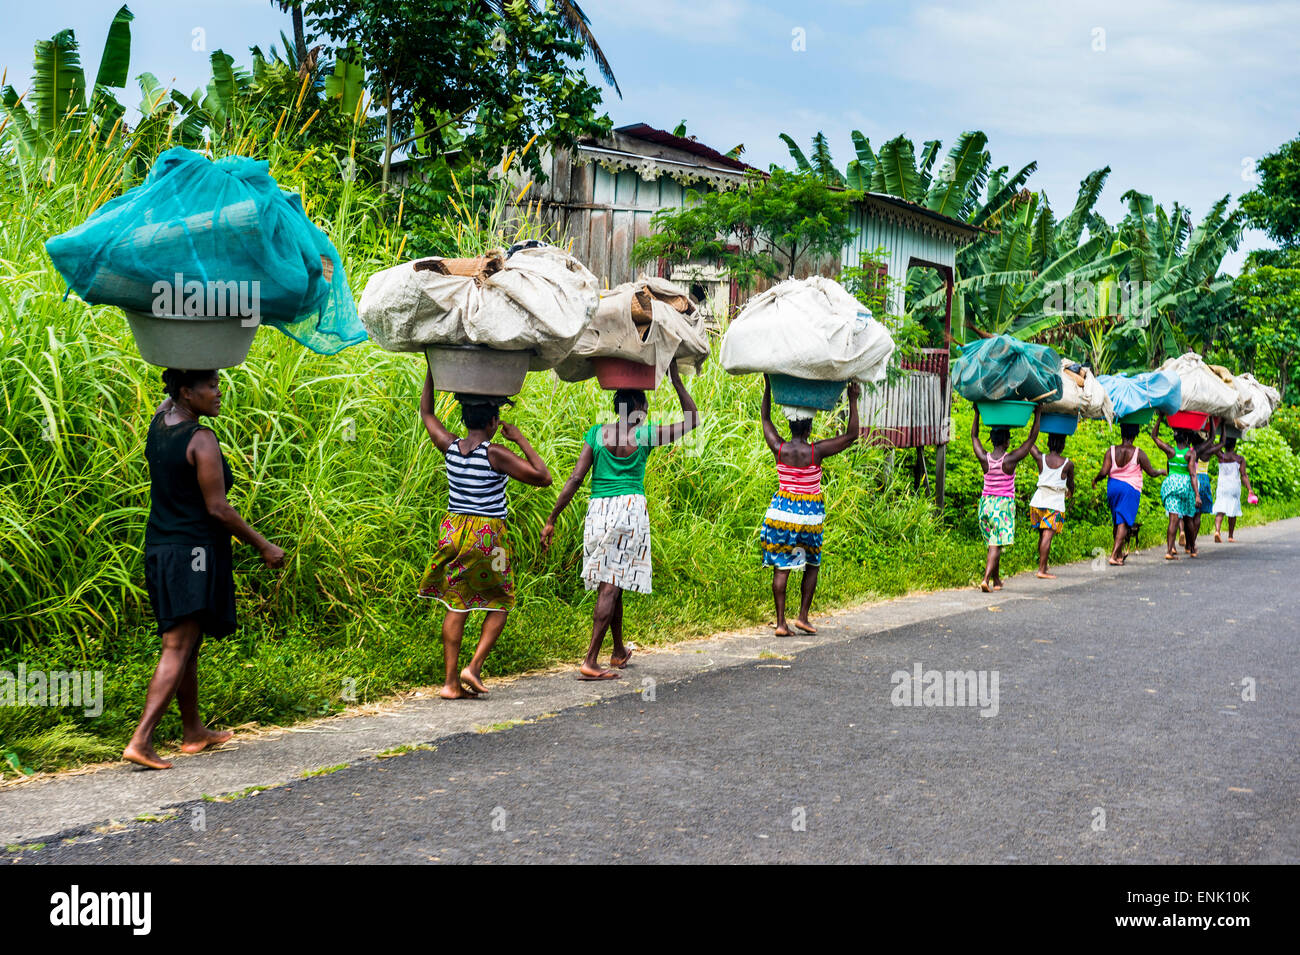 Frauen, die riesigen Körben auf ihren Köpfen, São Tomé, Sao Tome und Principe, Nordatlantik, Afrika Stockfoto